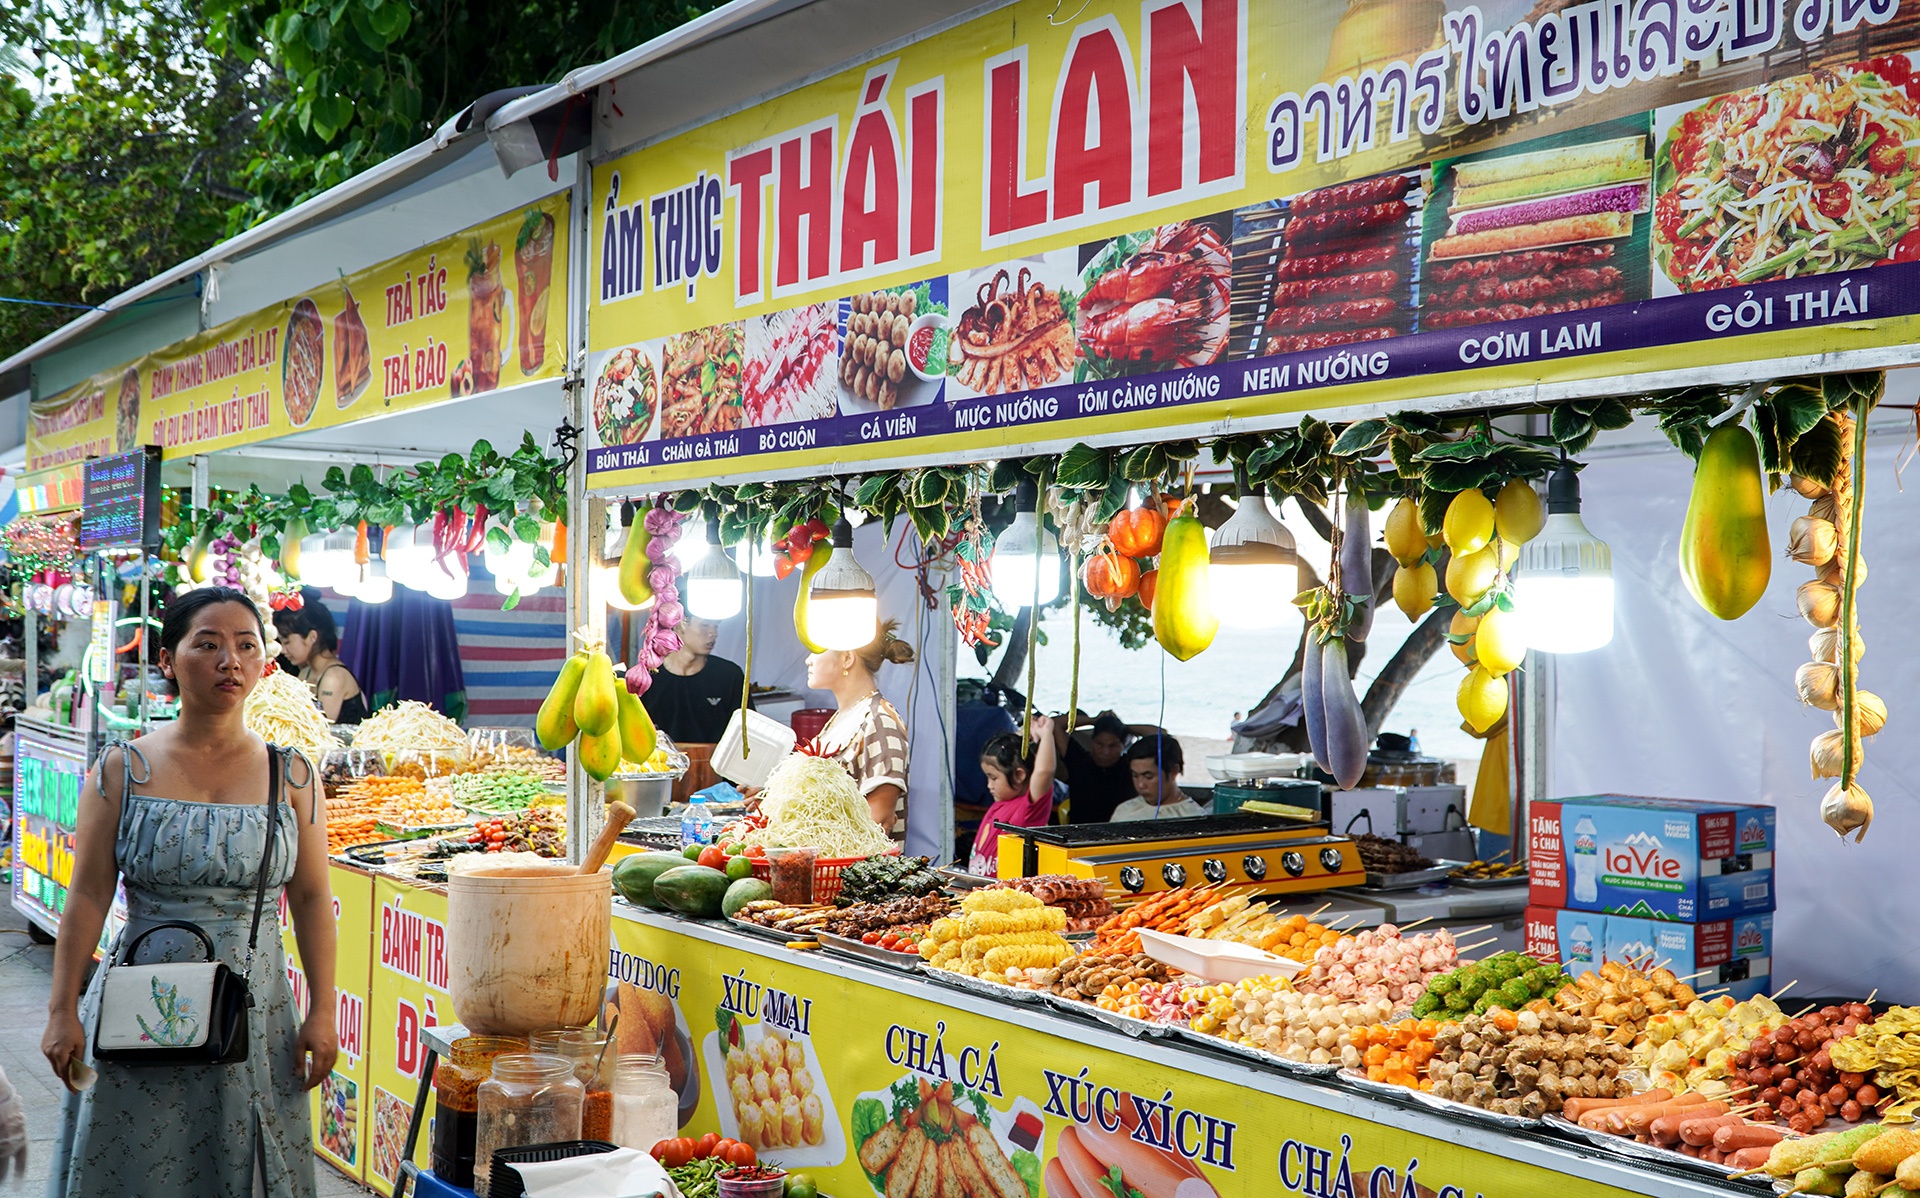 Bò một nắng Gia Lai, cơm lam tại lễ hội ẩm thực ở Nha Trang - ảnh 10